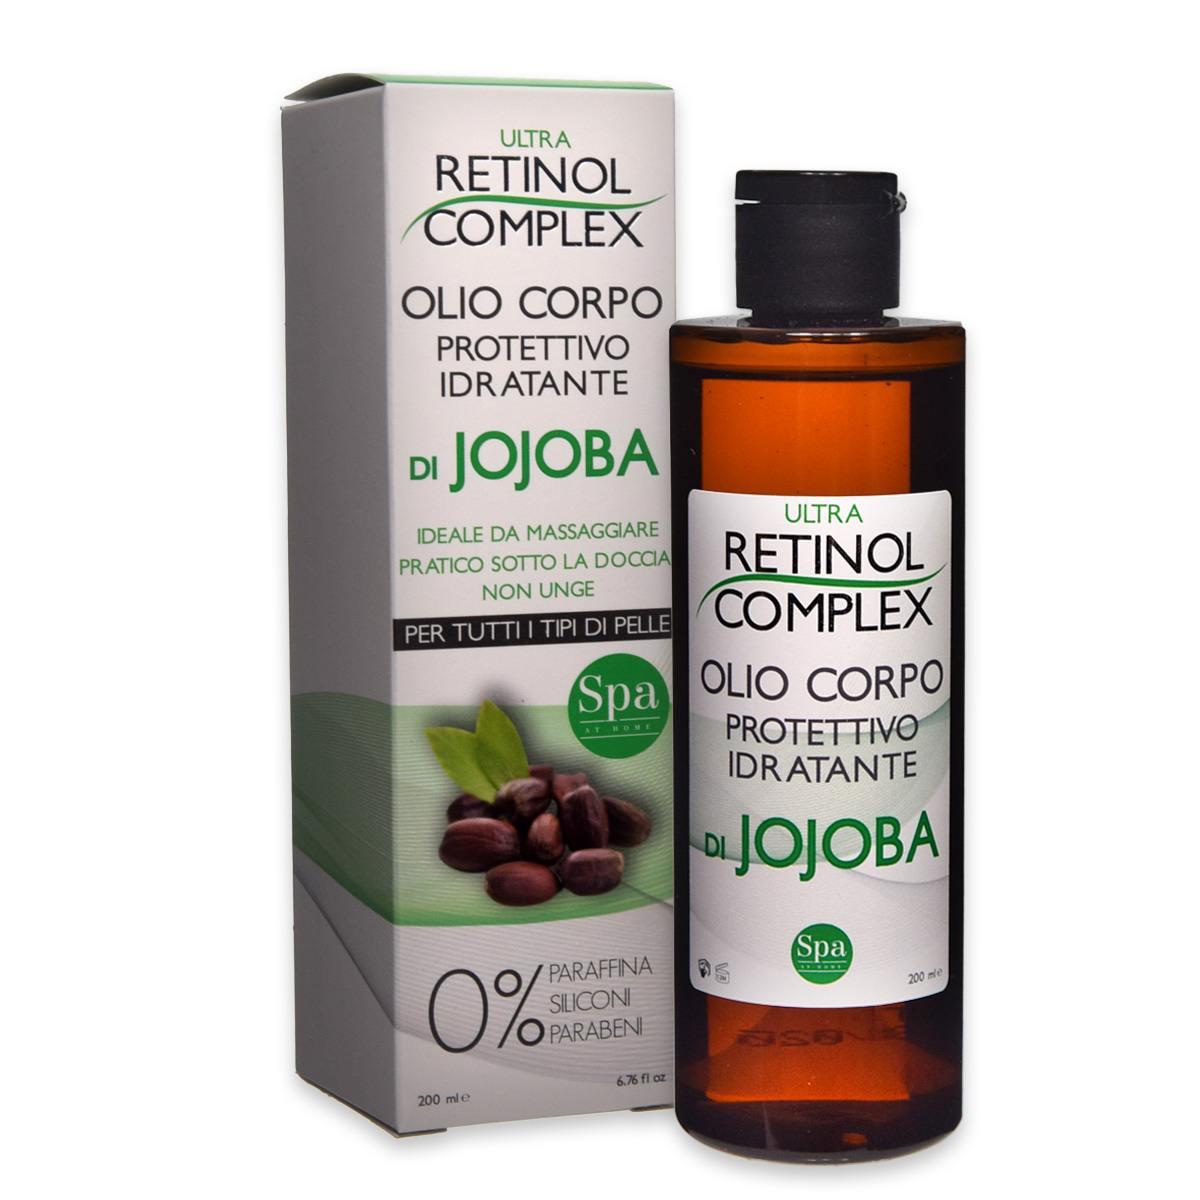 Retinol complex ultra olio corpo con jojoba 200 ml